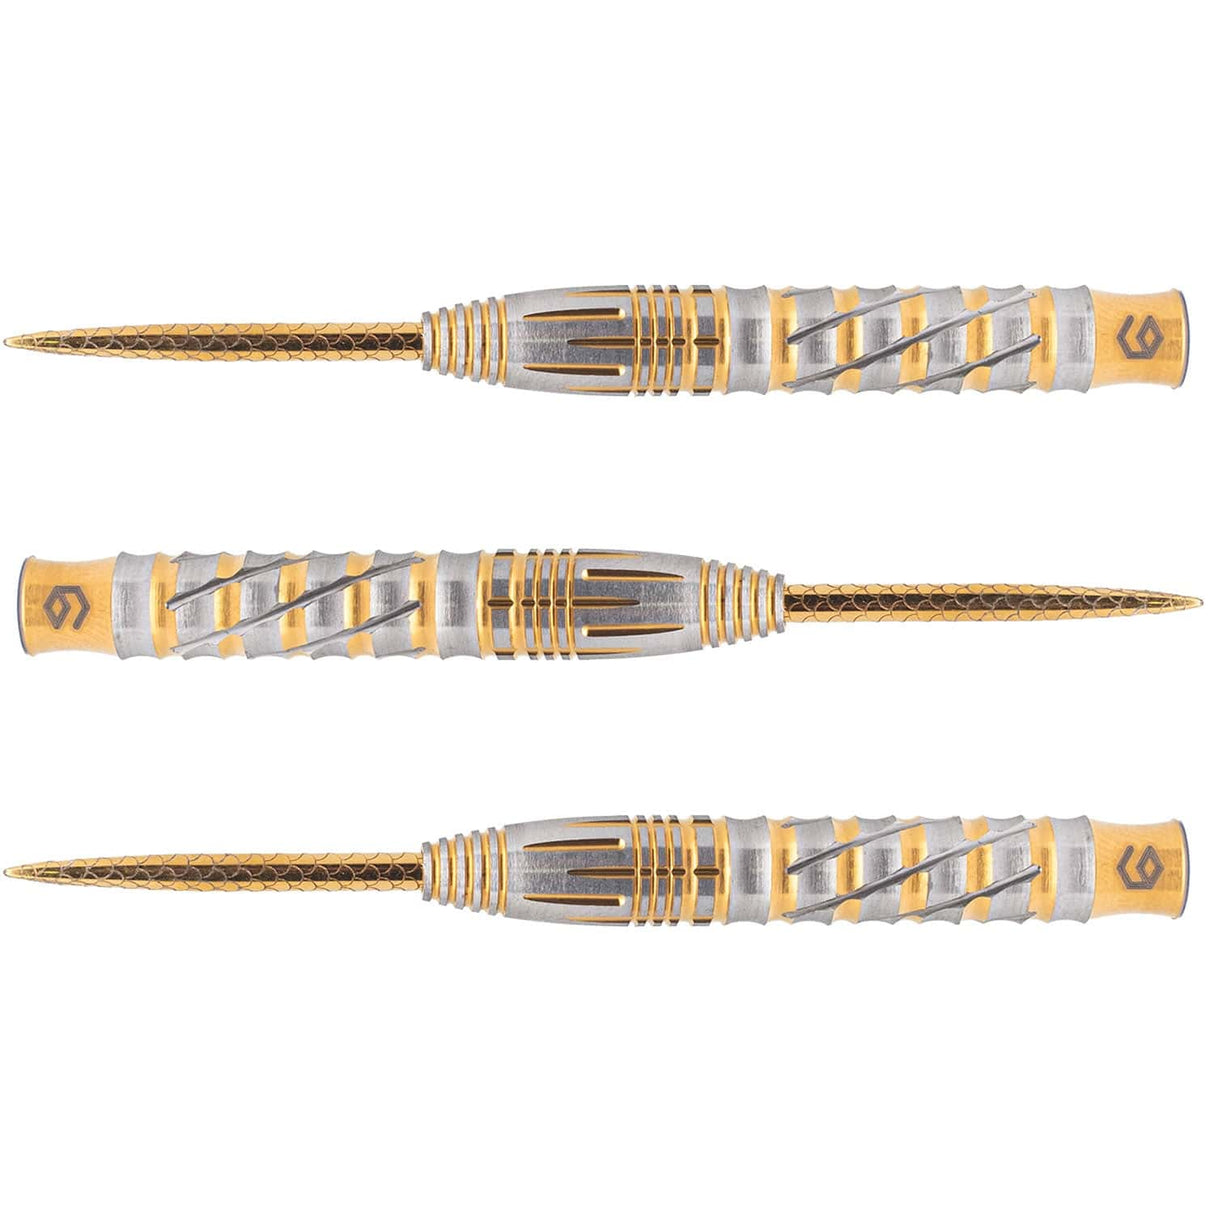 Caliburn Leopard Darts - Steel Tip - 90% - Gold 22g